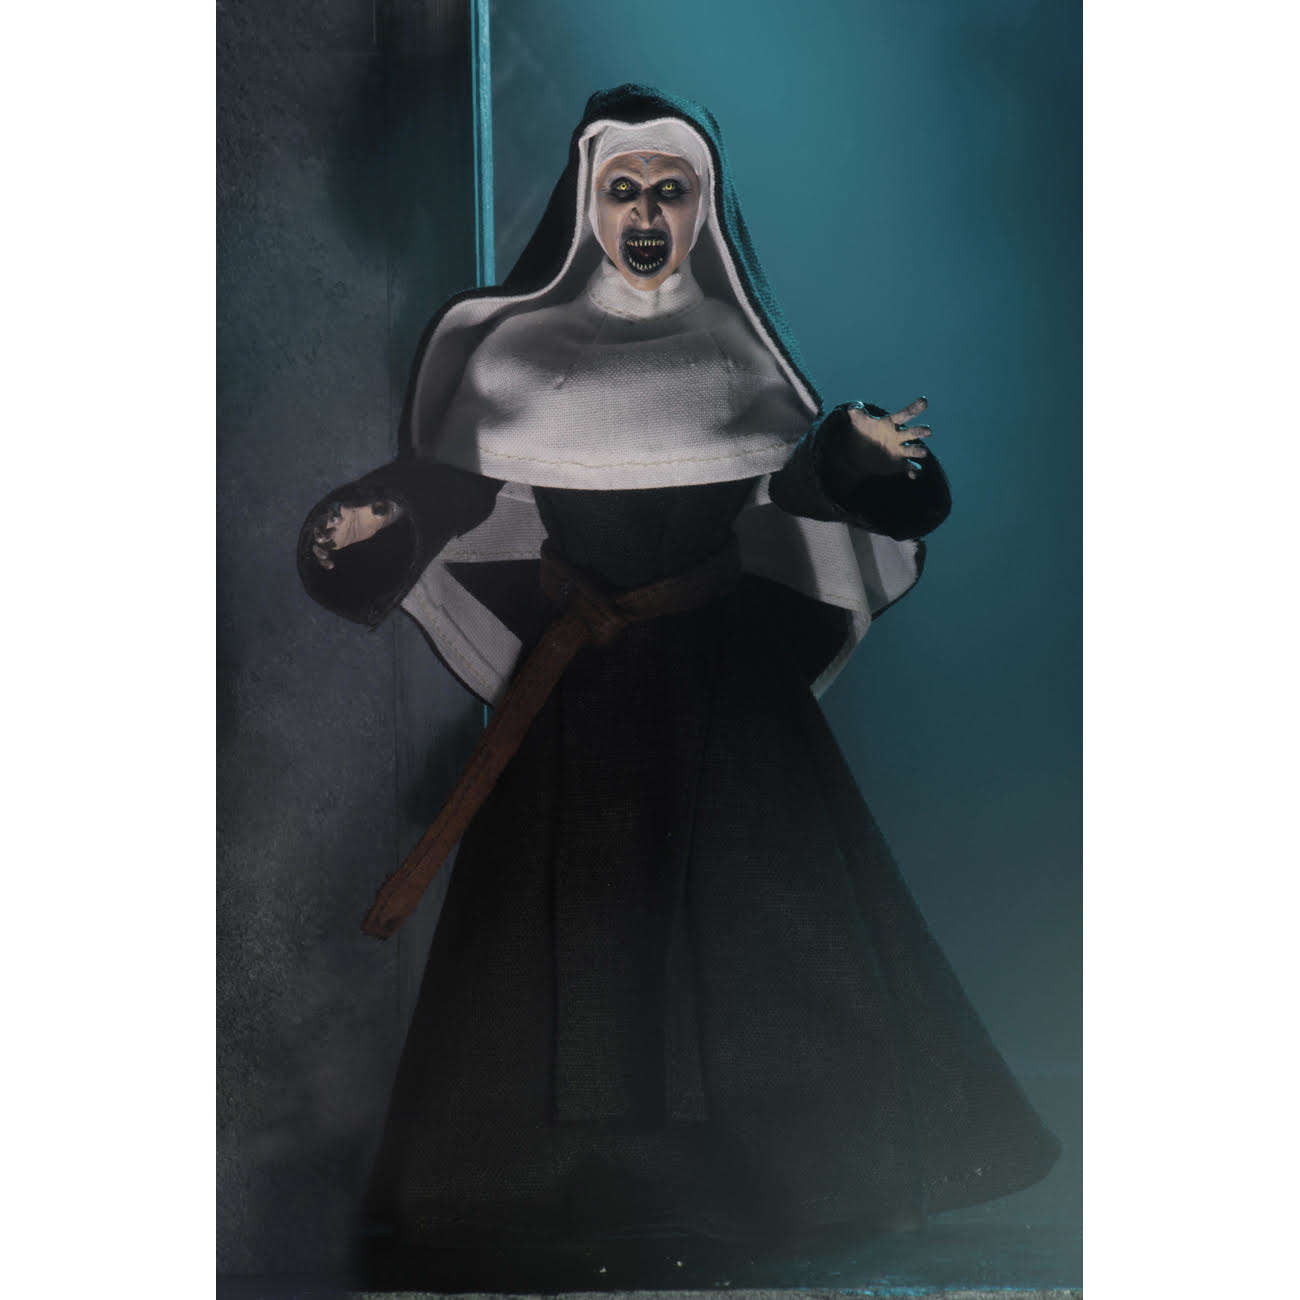 The Nun: 8” Nun Collectible Clothed Figure